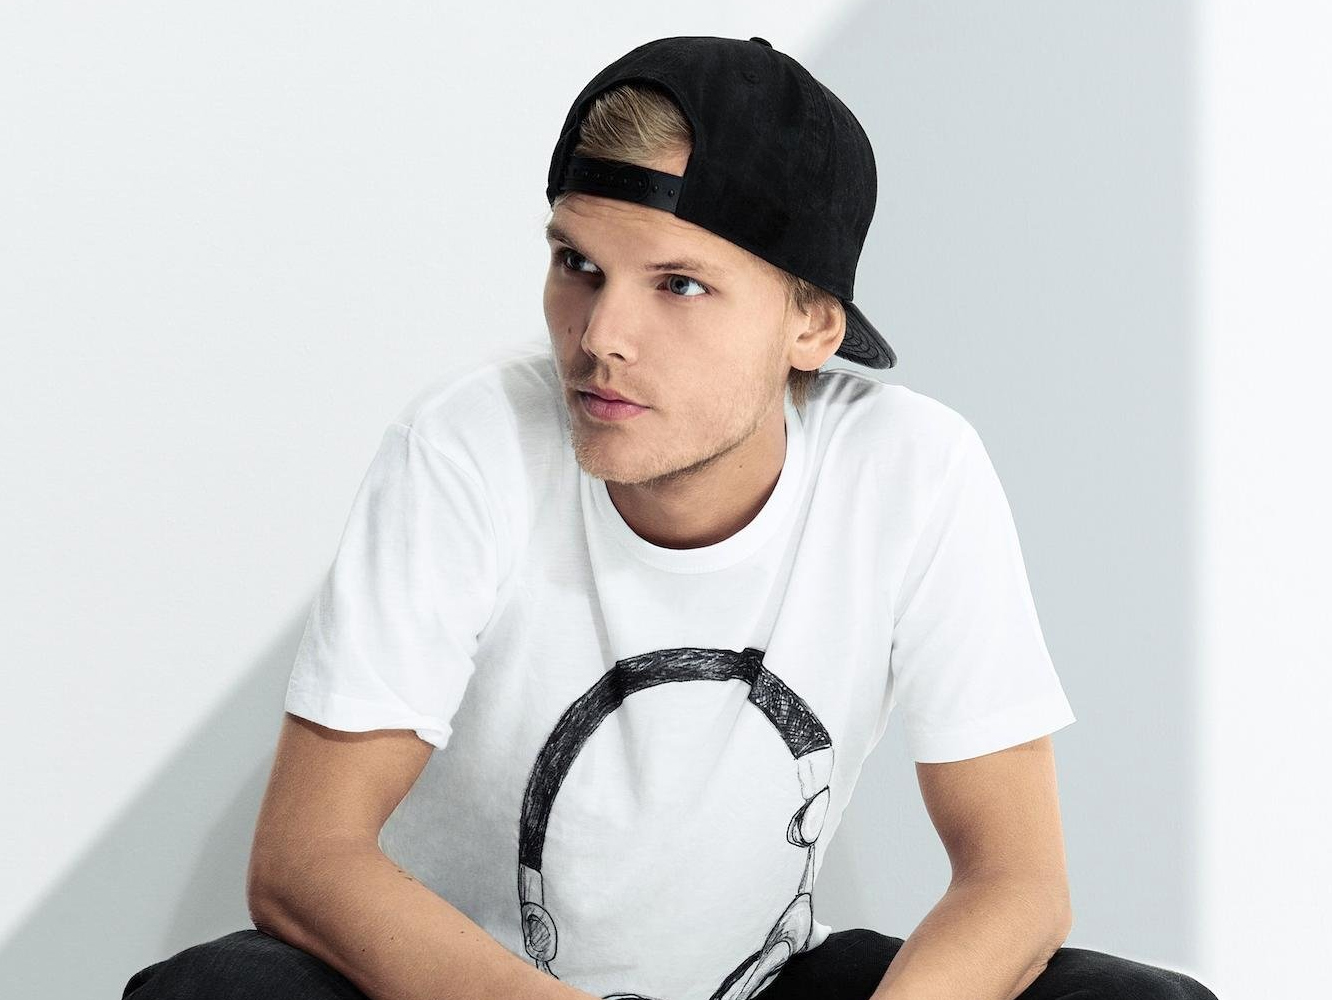  Fallece el DJ y productor sueco Avicii a los 28 años